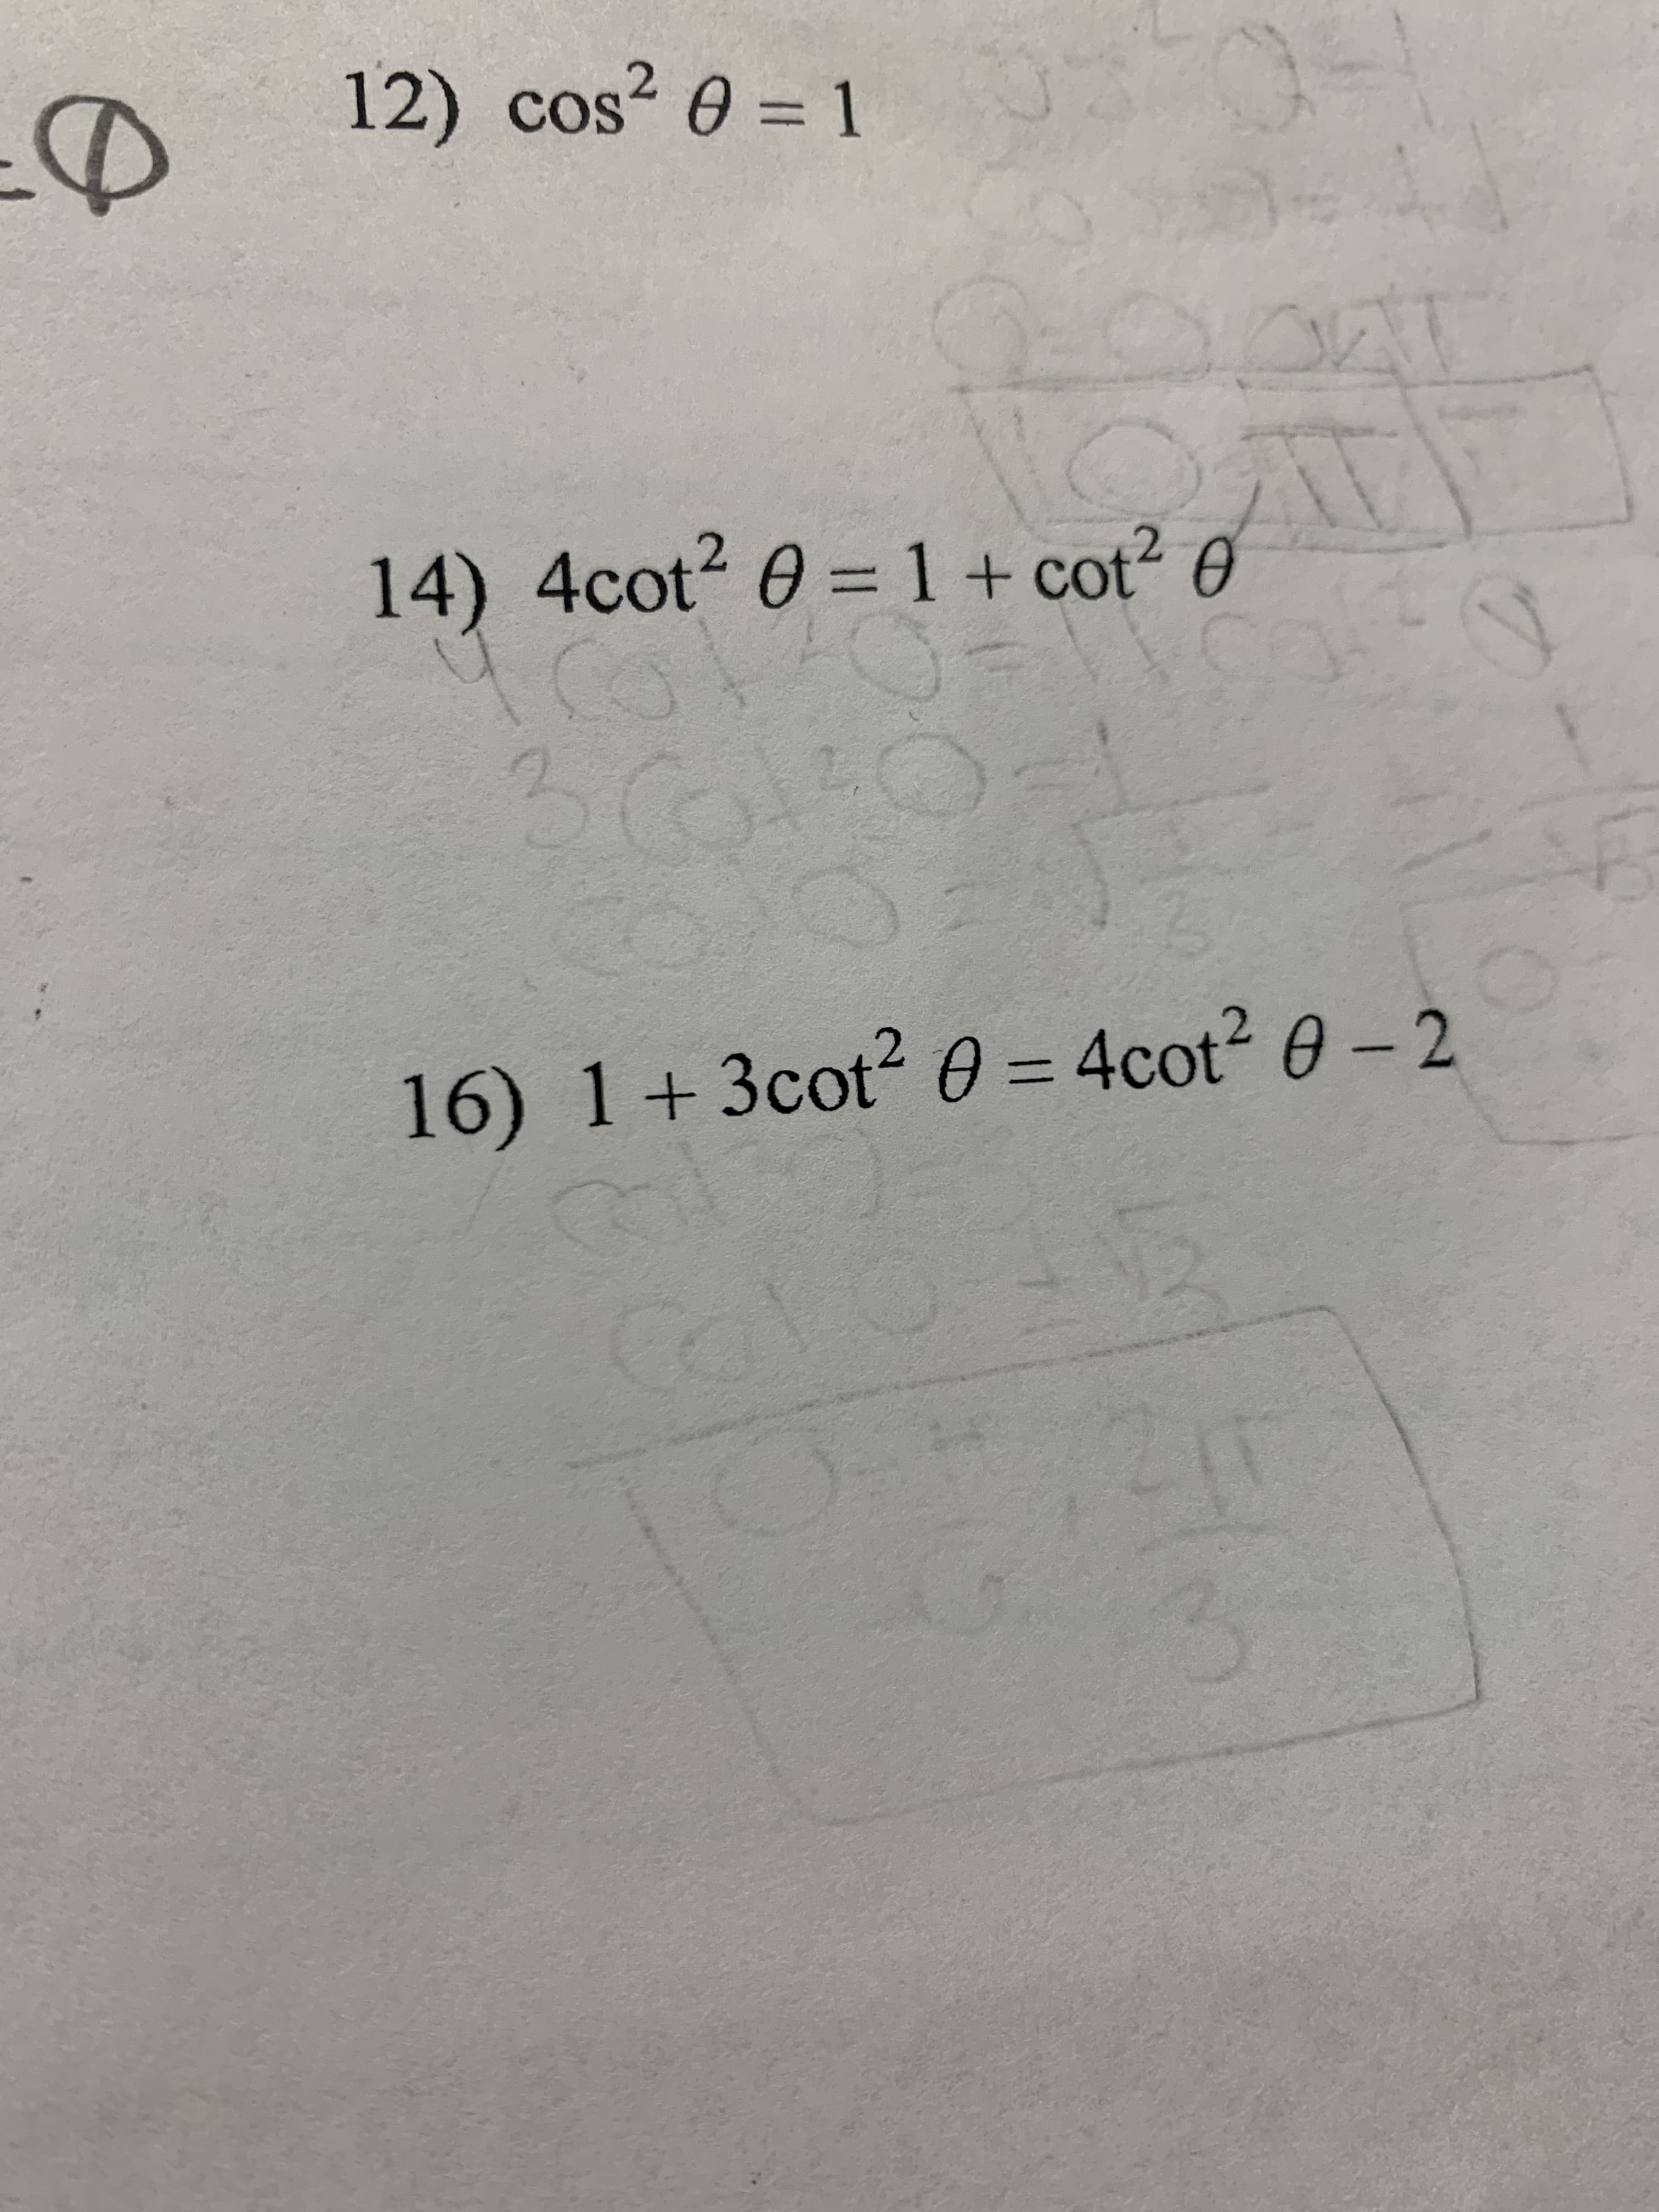 12) cos? 0 = 1
14) 4cot2 0 =1+ cot² 0
16) 1+3cot? 0 = 4cot? 0 - 2
%3D
